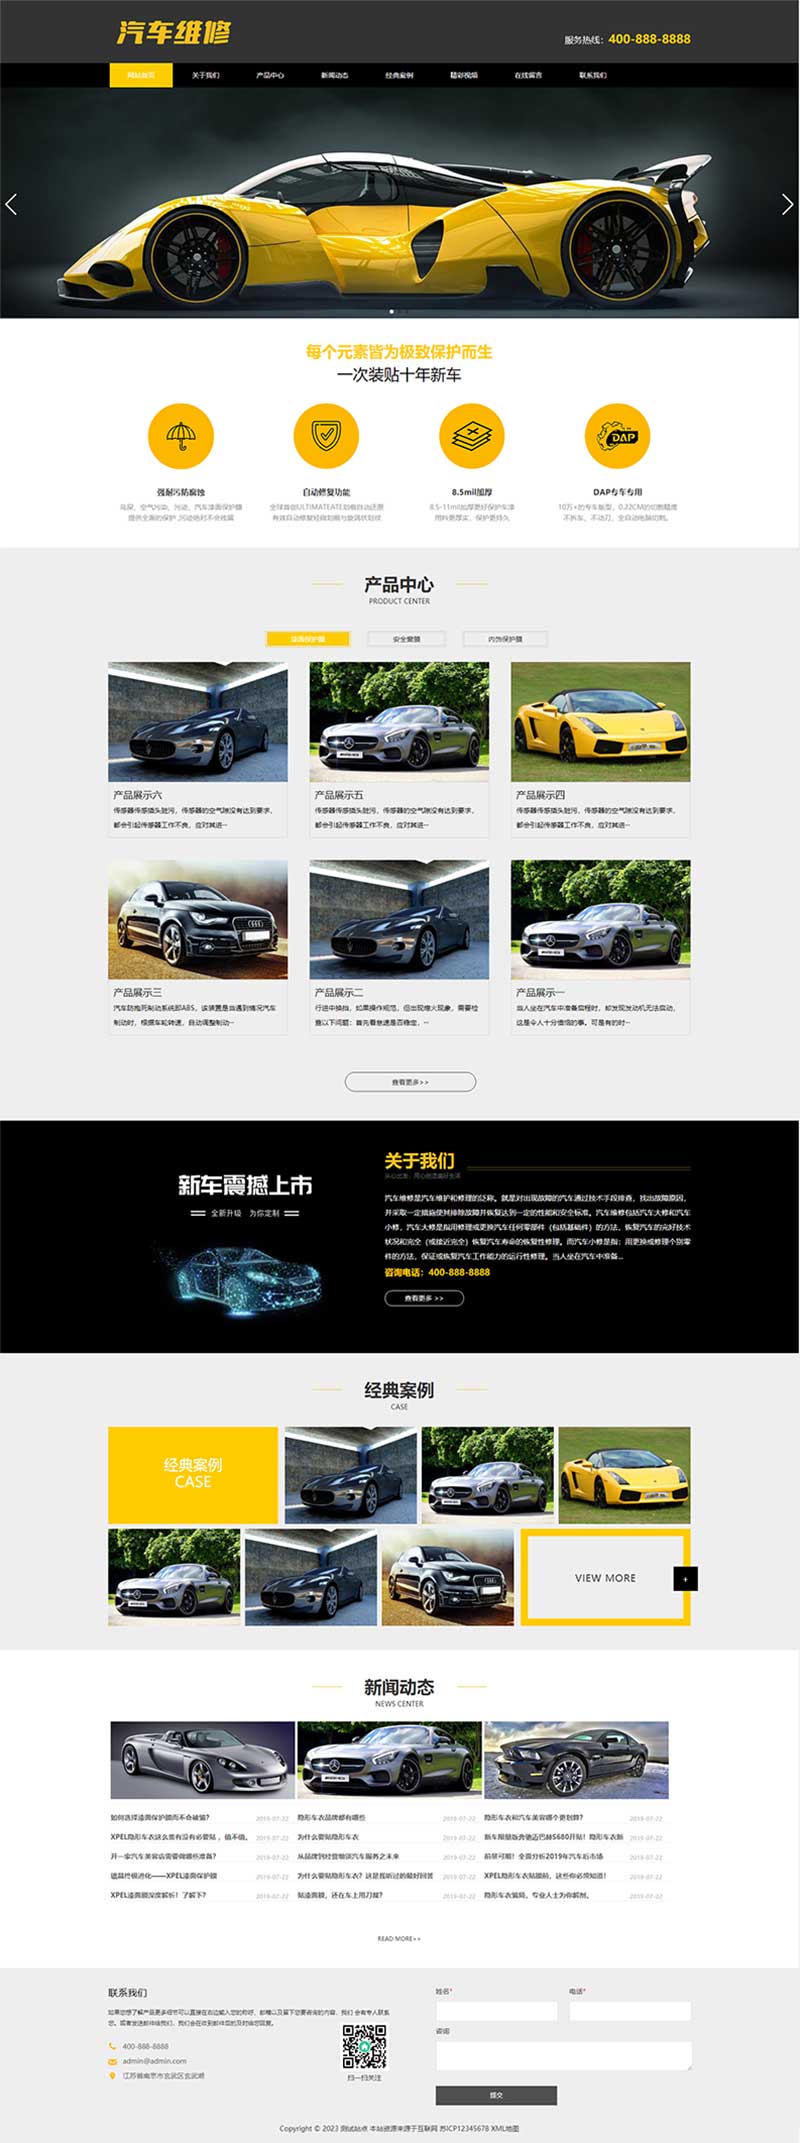 汽车美容维修贴膜工厂网站模板 4S汽车维修店网站源码下载